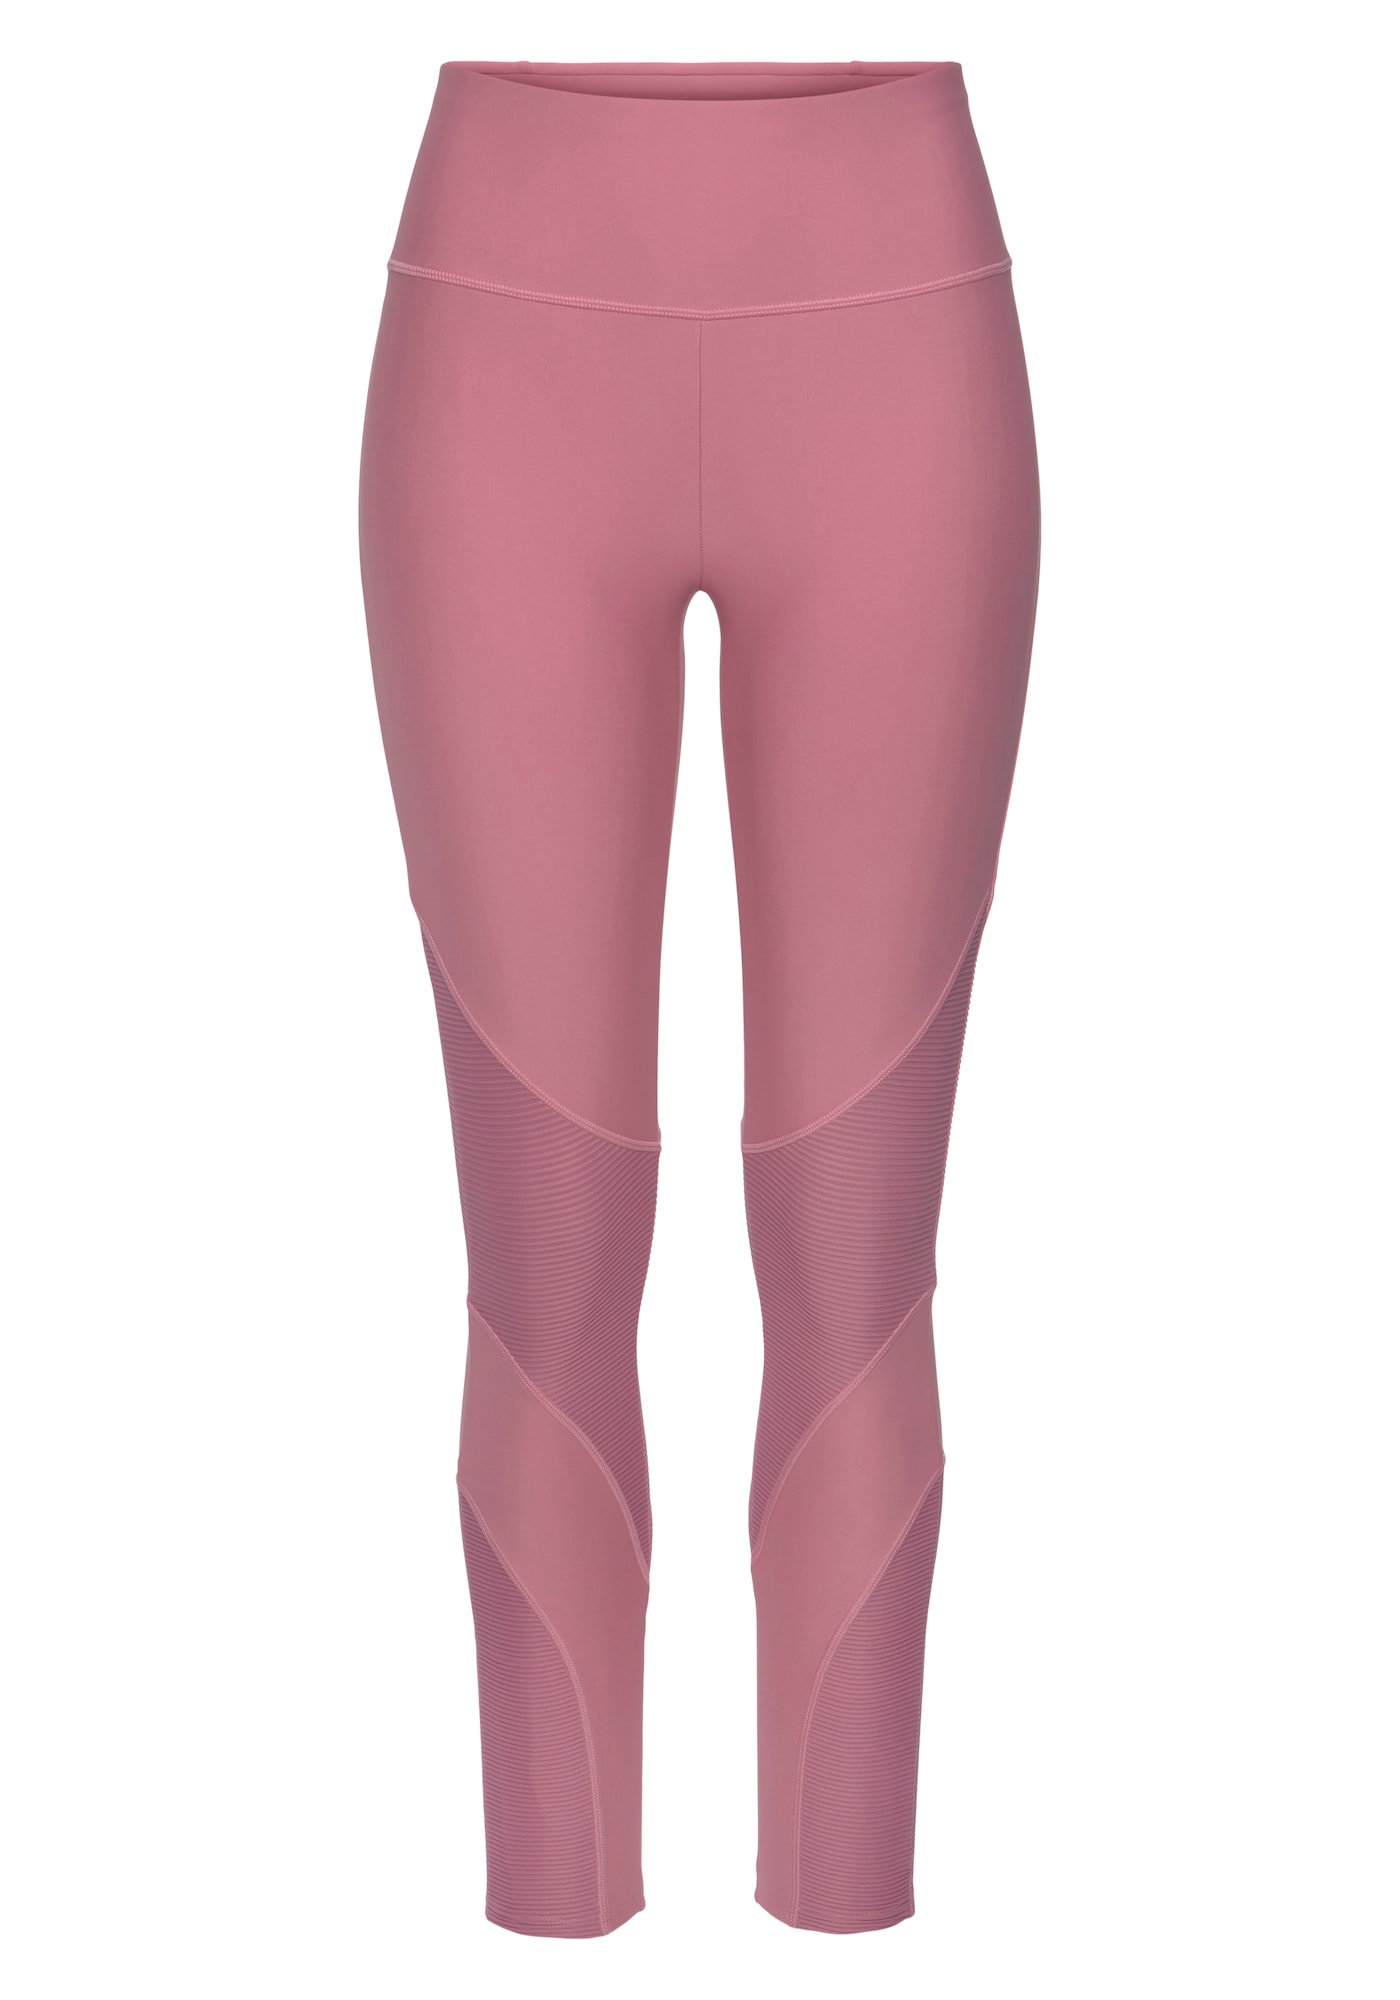 LASCANA ACTIVE Sportinės kelnės ryškiai rožinė spalva